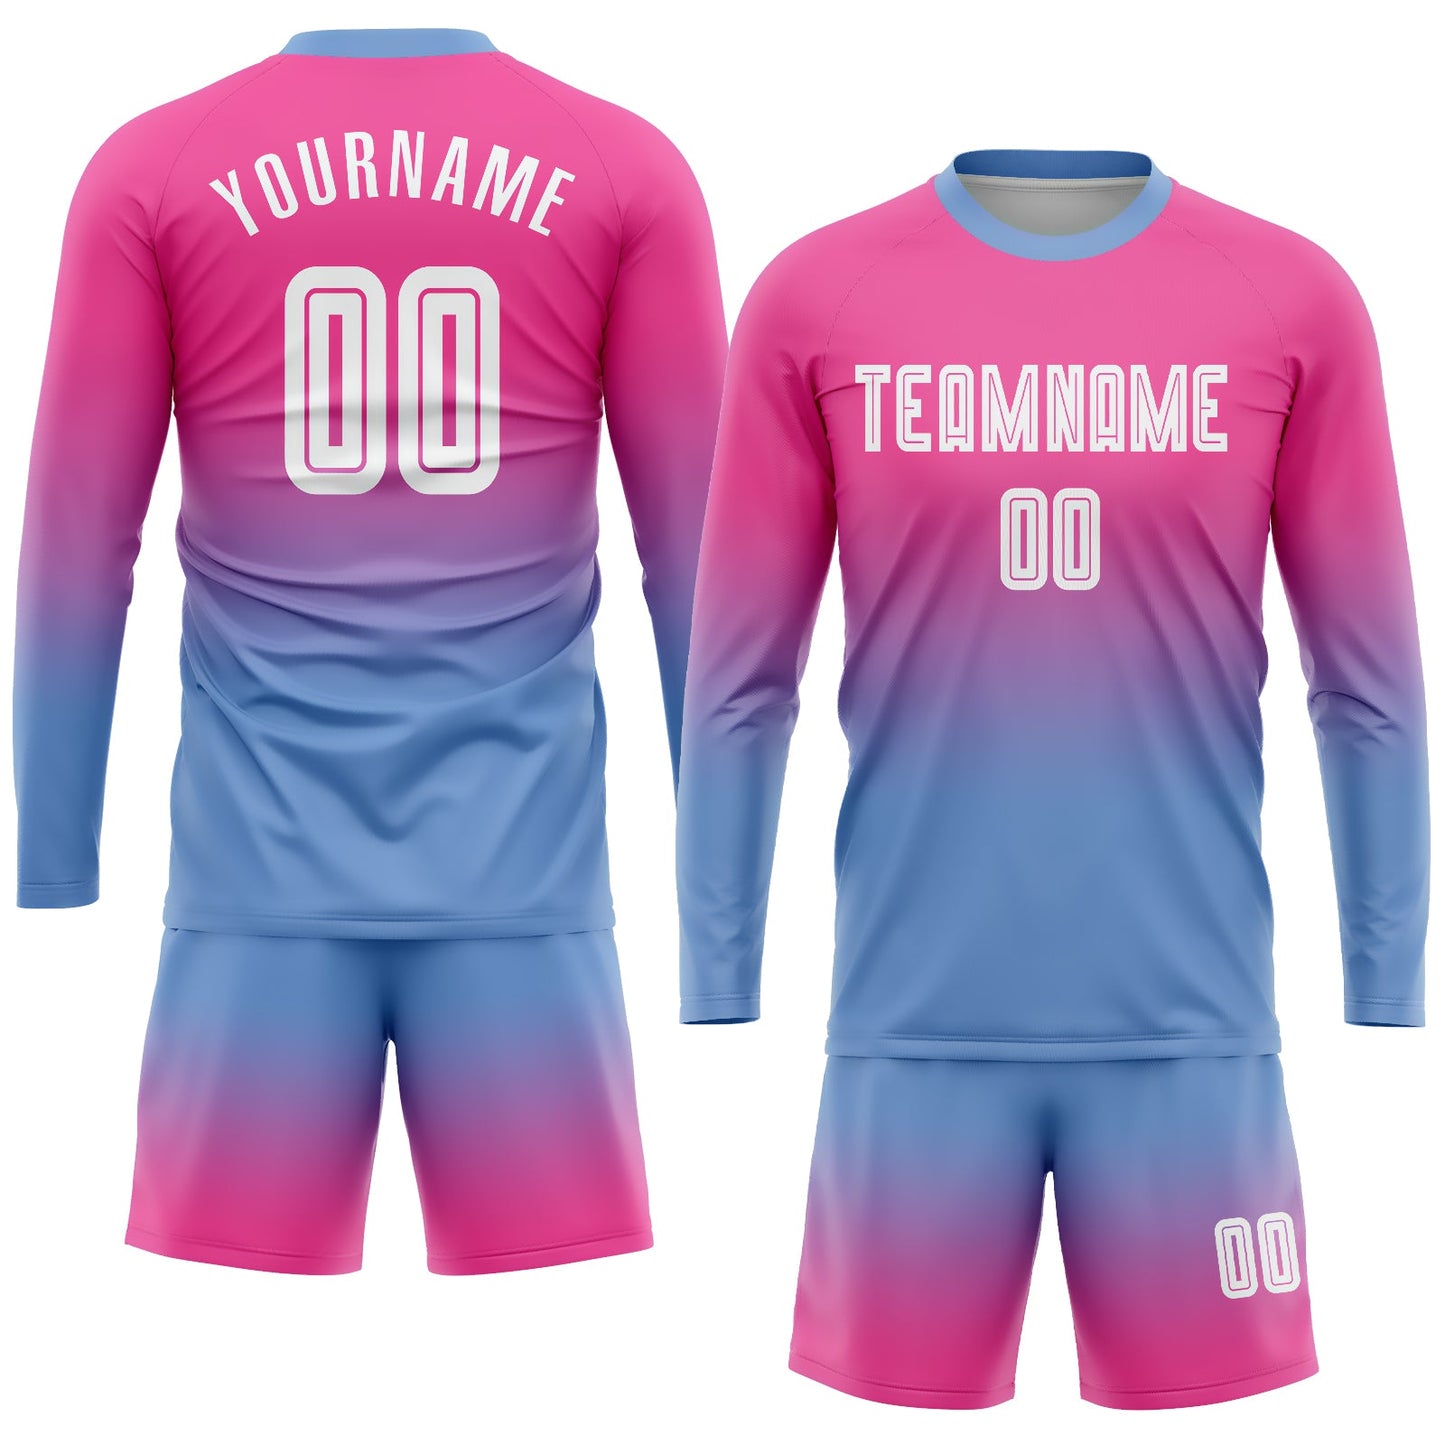 Maillot d'uniforme de football à manches longues, rose, blanc et bleu clair, personnalisé, à la mode, fondu, par Sublimation